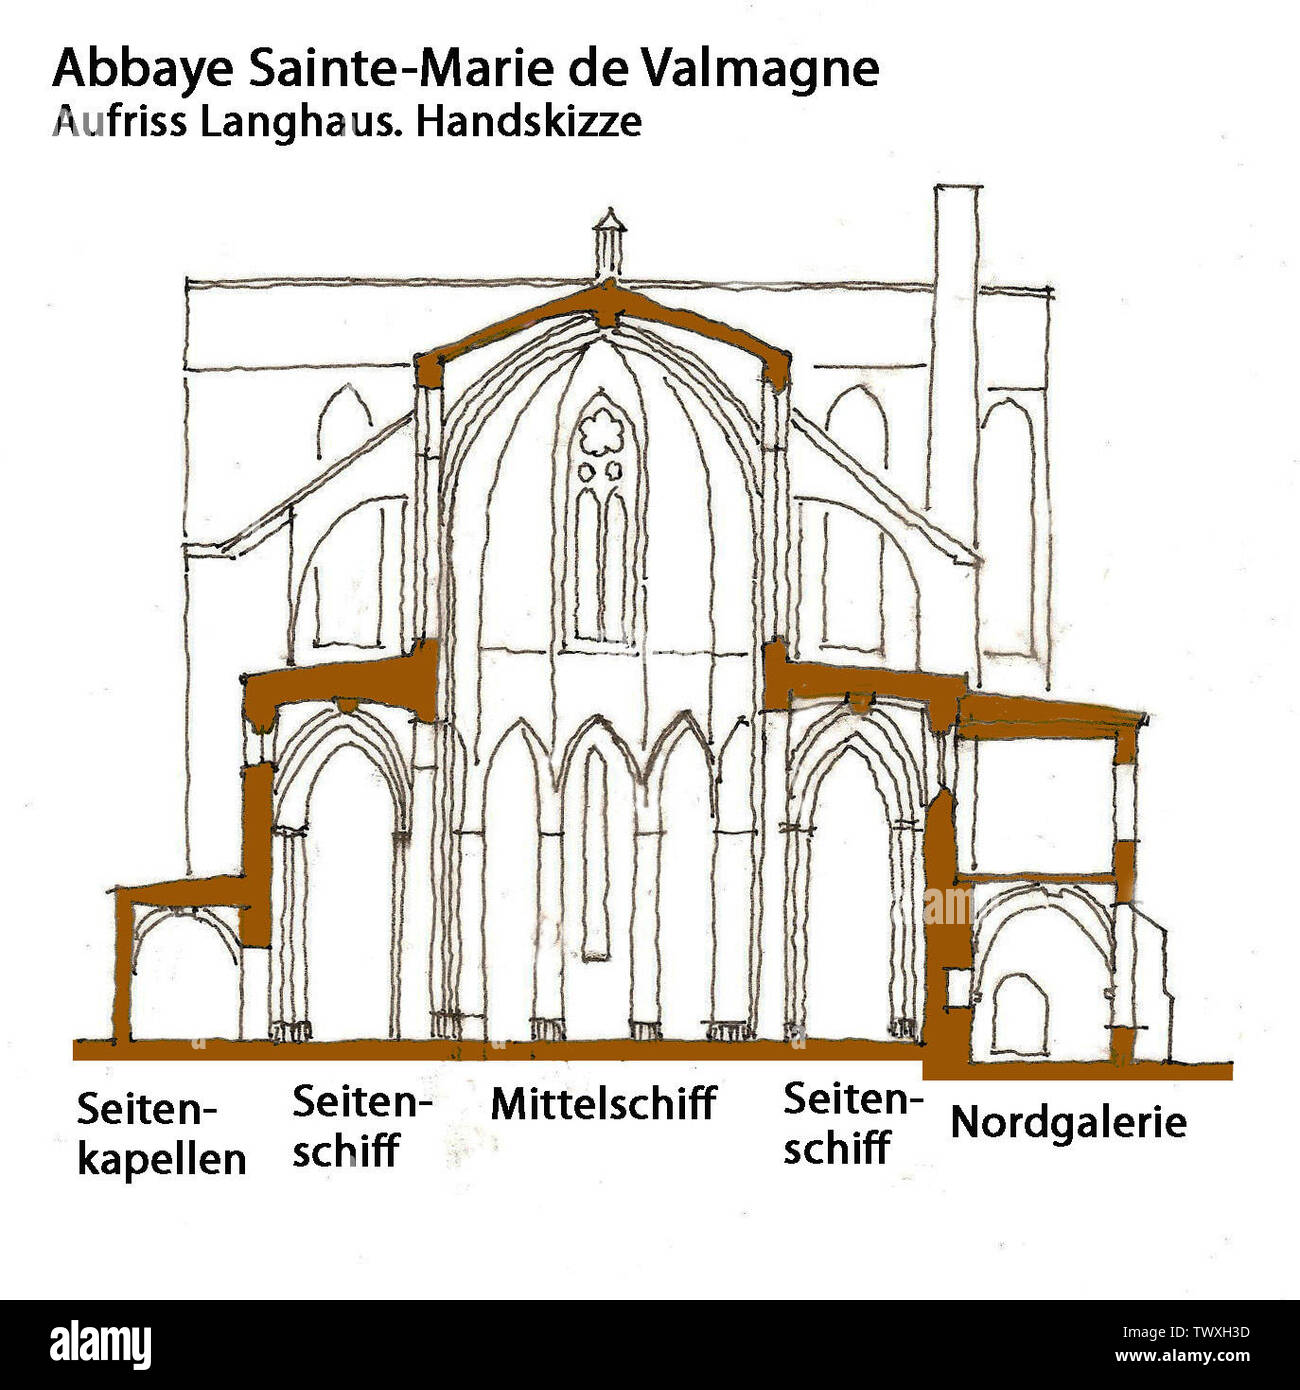 Abbaye de Valmagne, Aufriss Langhaus, Handskizze; 22 March 2011; Own work (Original text:  selbst gezeichnet); Jochen Jahnke; Stock Photo